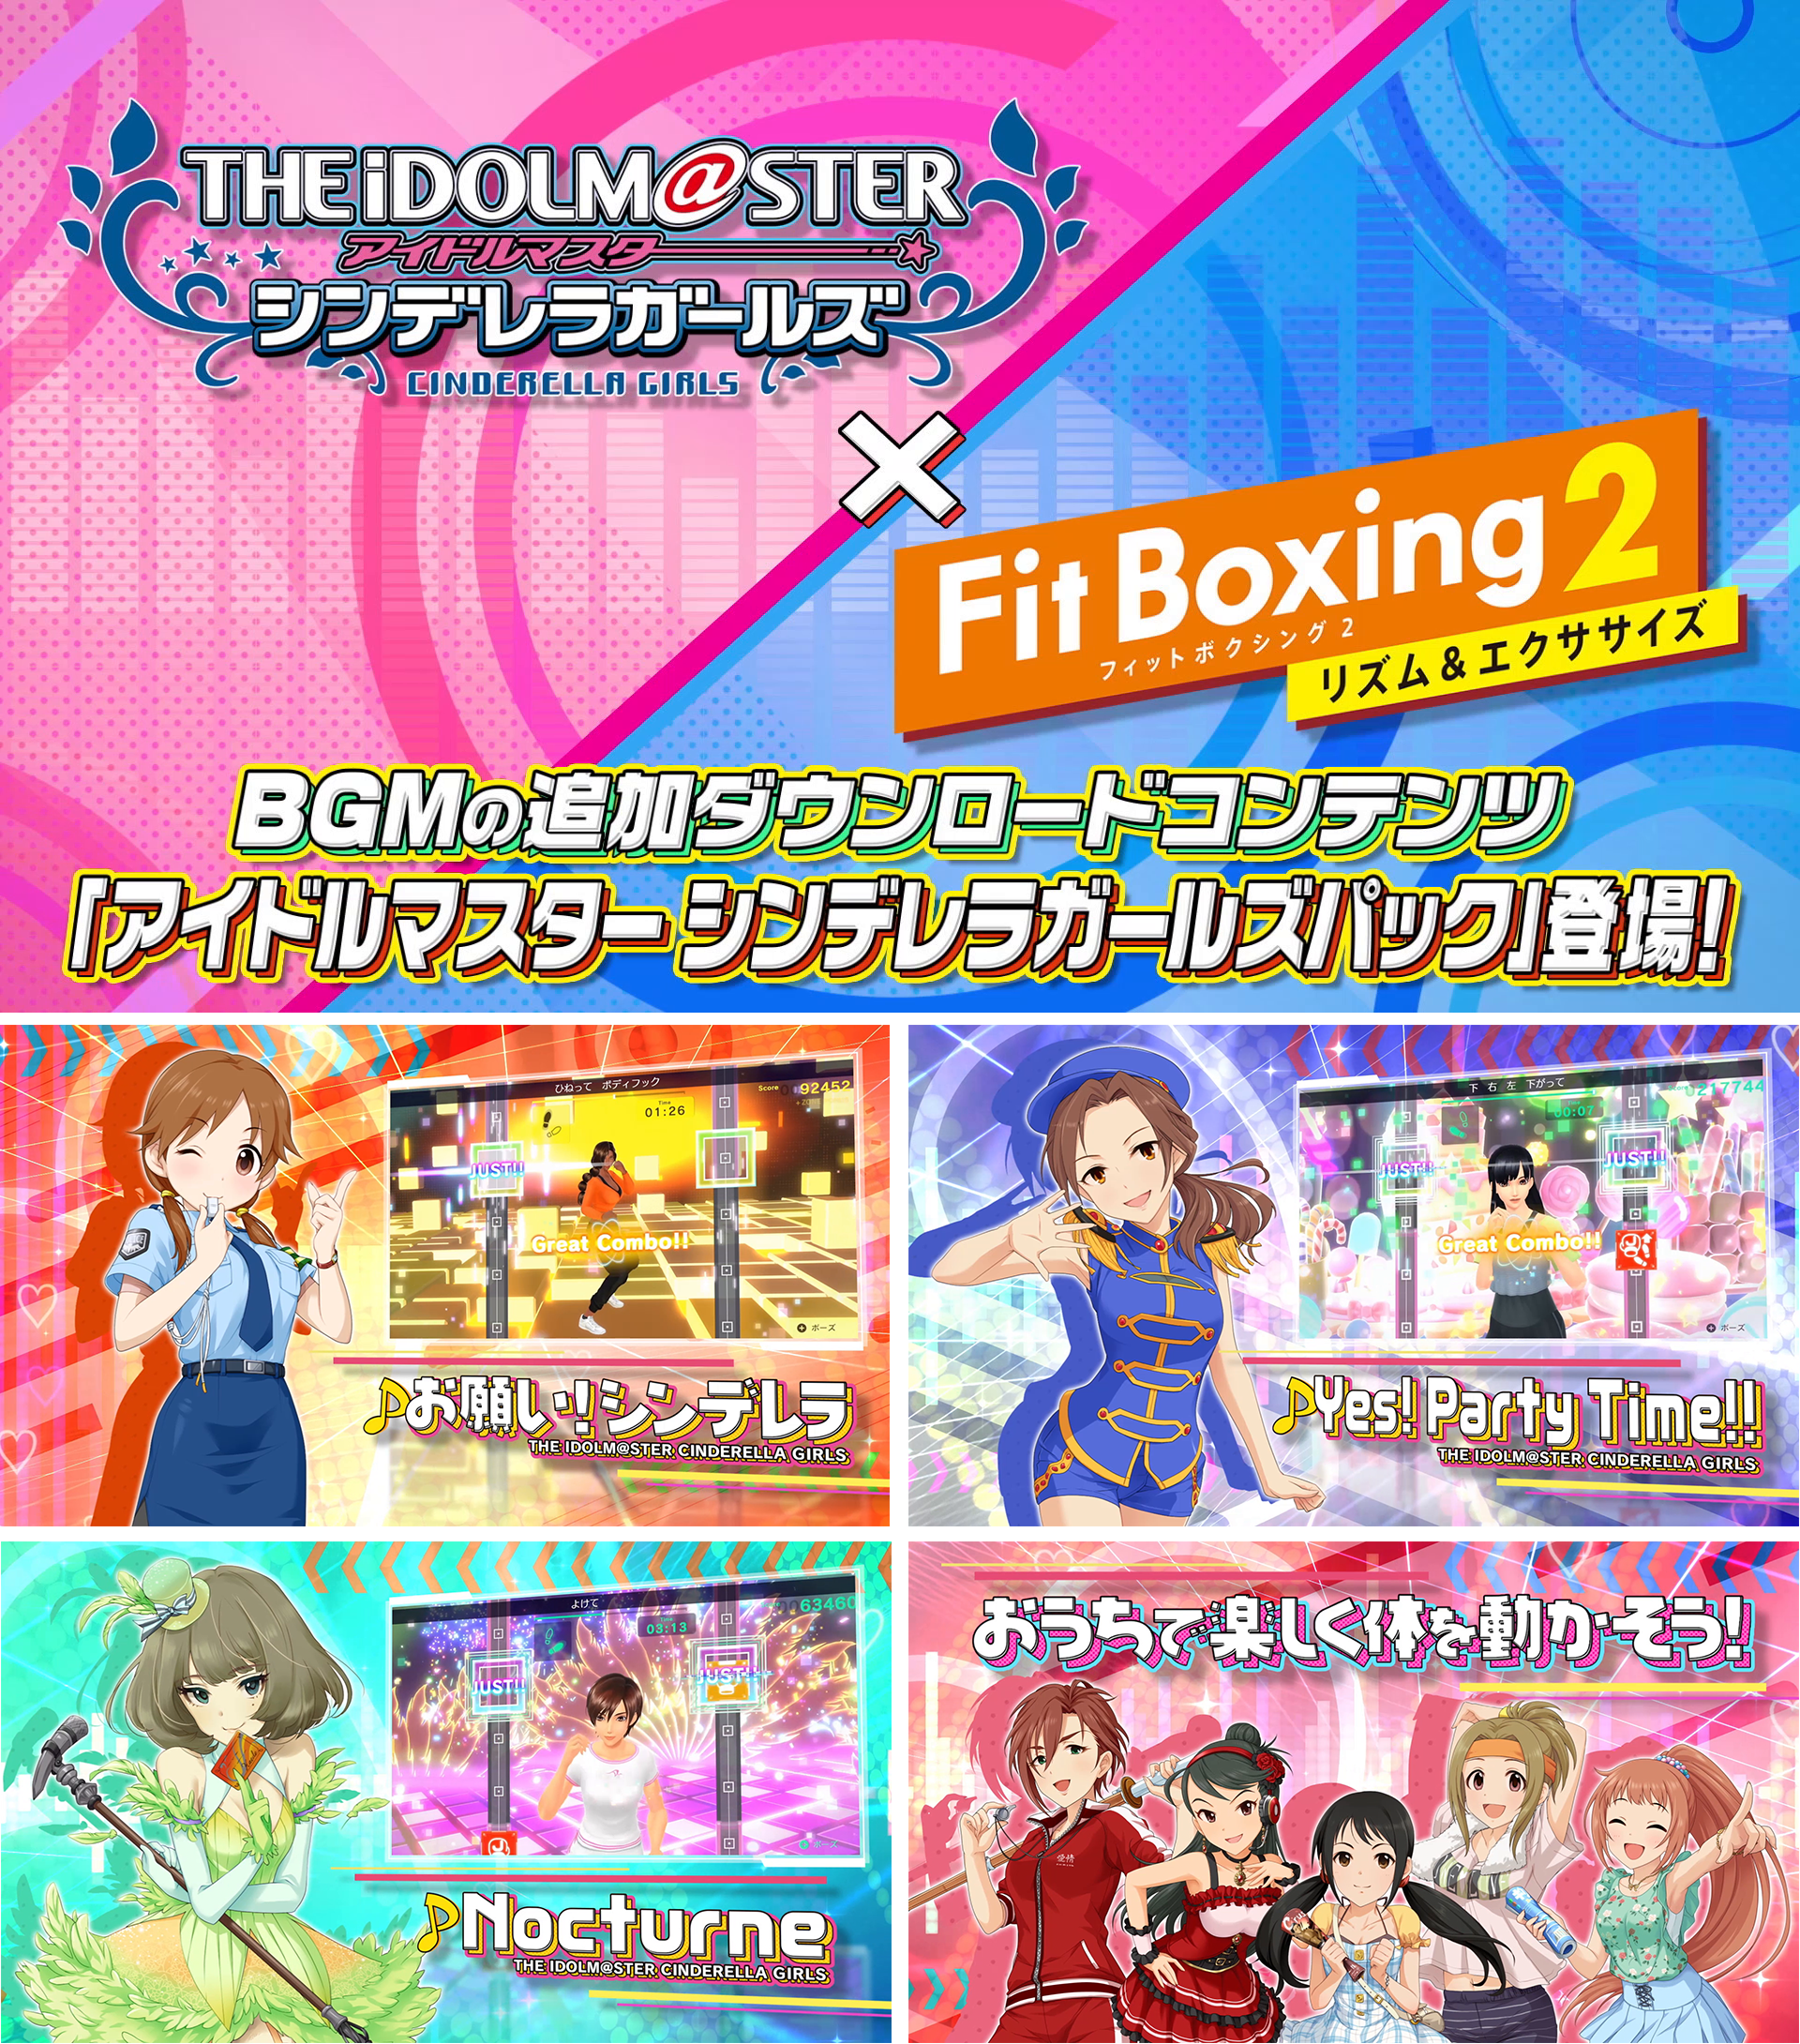 Fit Boxing2「アイドルマスター シンデレラガールズパック」配信決定のお知らせ2